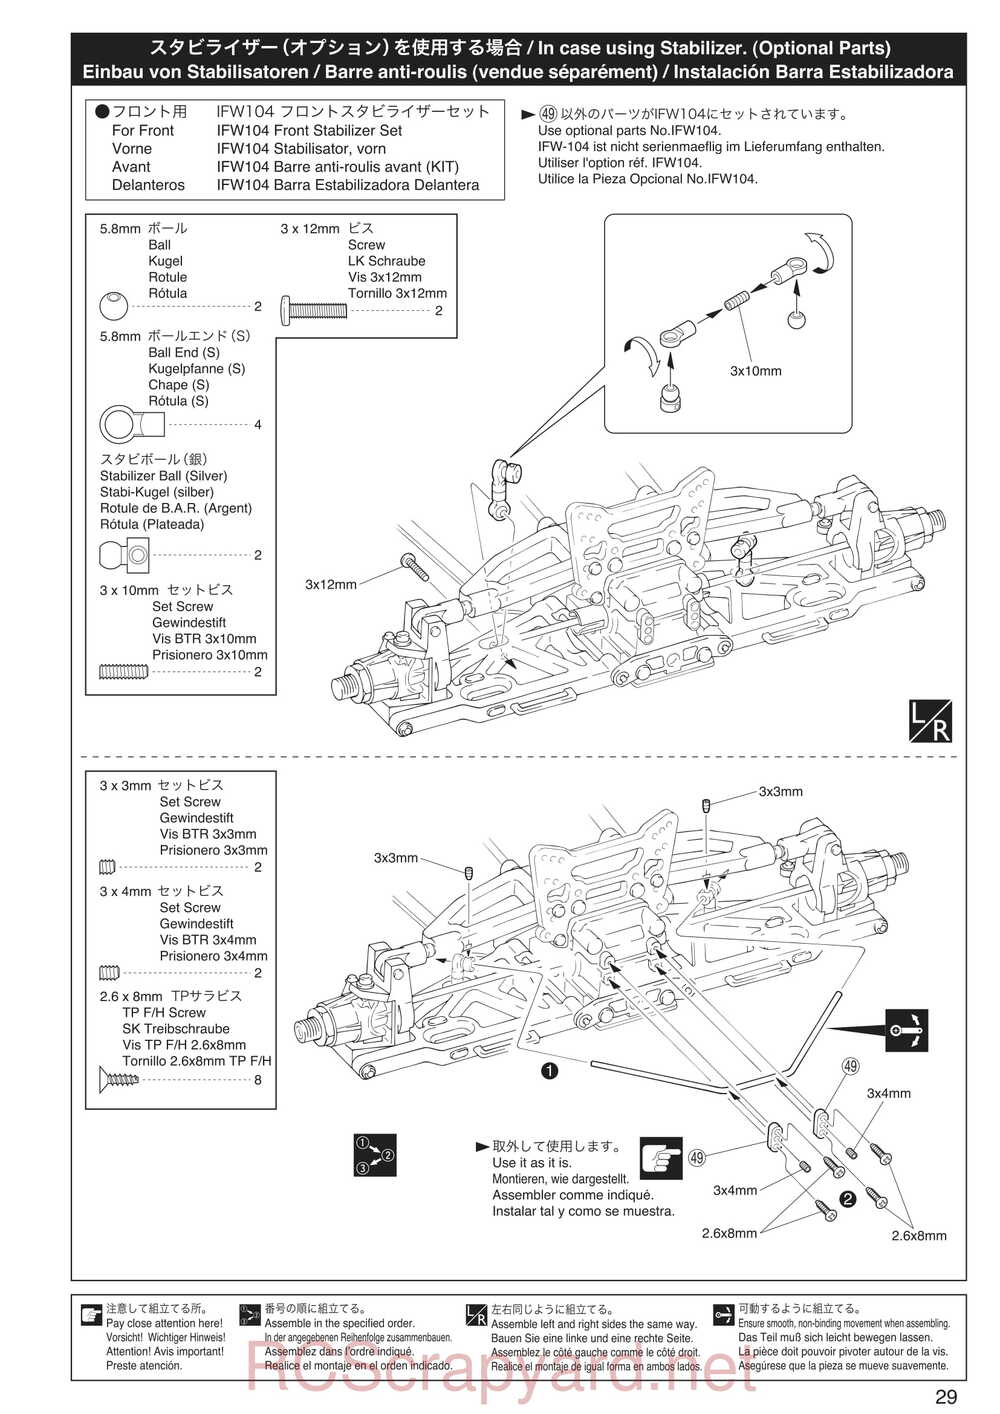 Kyosho - 30935 - Inferno GT2 VE Race-Spec - Manual - Page 29